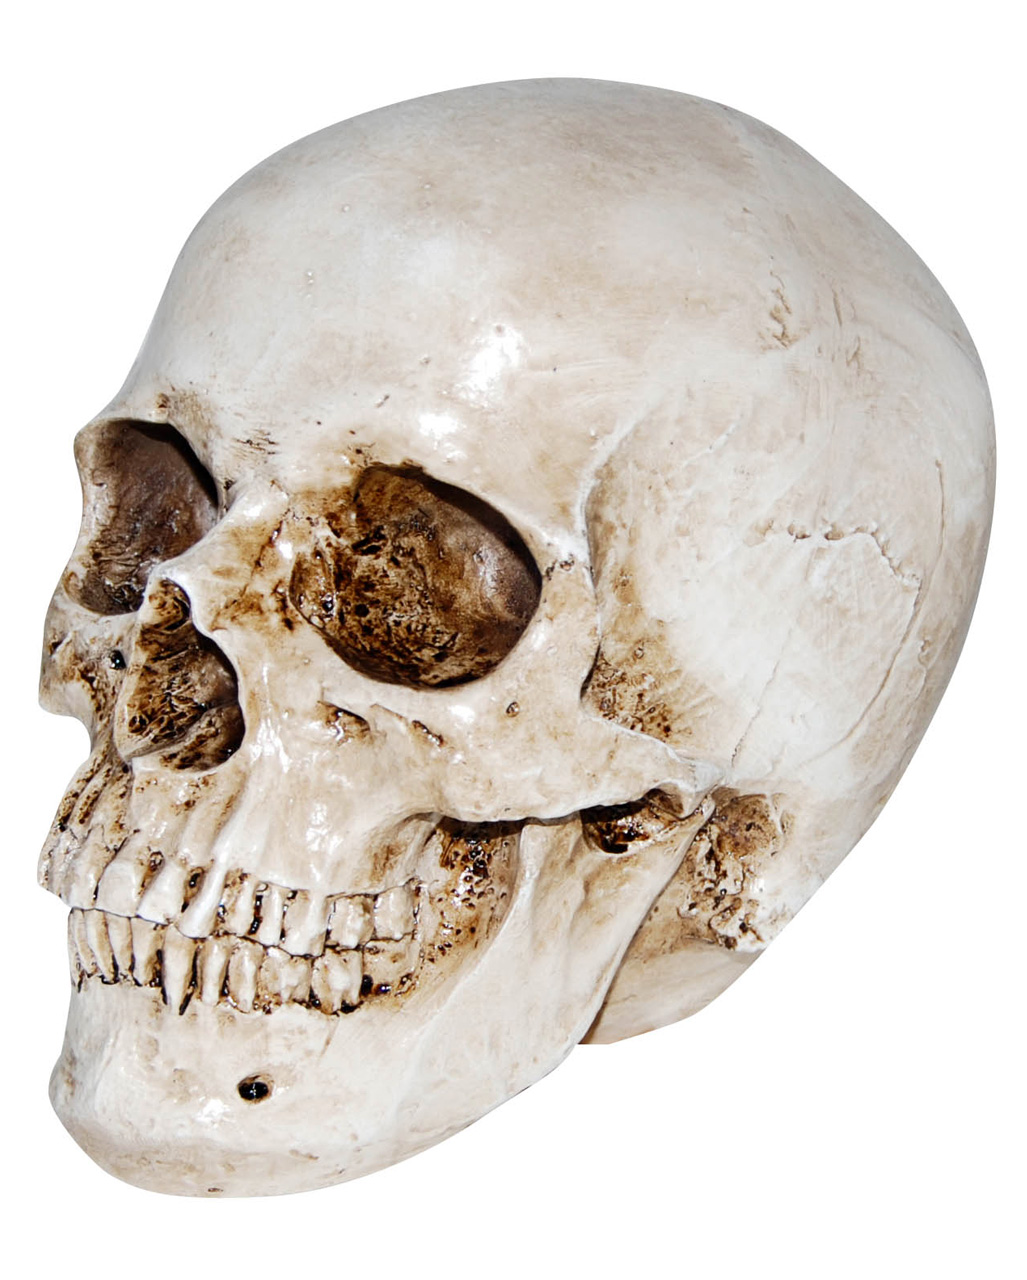 https://inst-0.cdn.shockers.de/ku_cdn/out/pictures/master/product/1/realistischer-kunststein-totenschaedel-halloween-totenkopf-realistic-resin-skull-38410.jpg